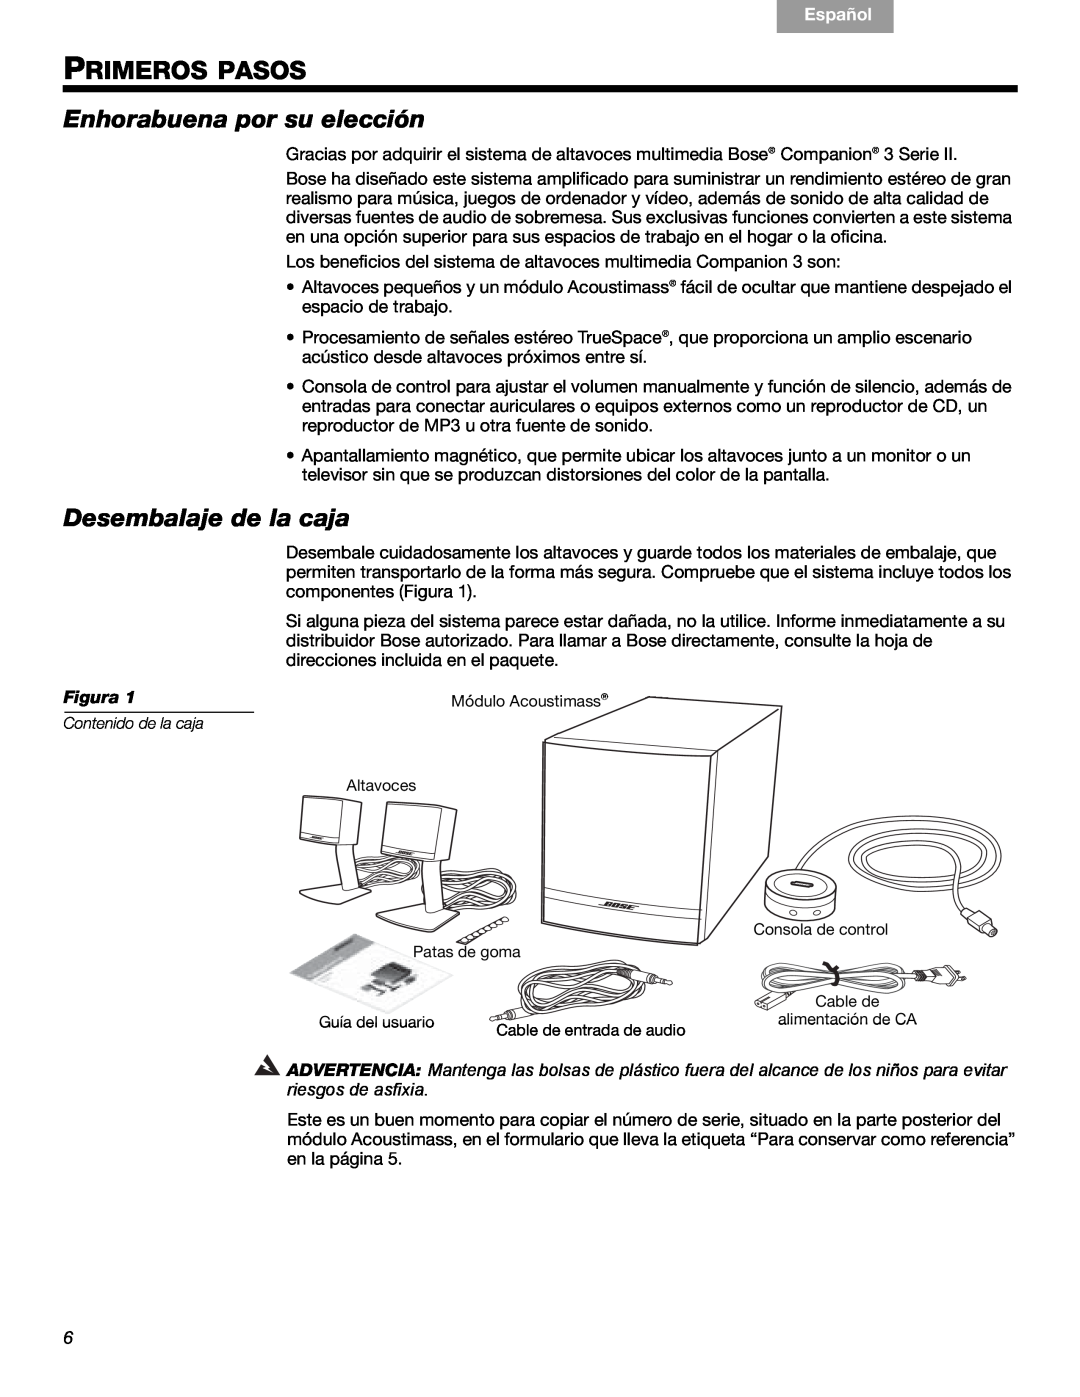 Bose 3 manual Primeros Pasos, Enhorabuena por su elección, Desembalaje de la caja, Figura, Français, Español, English 